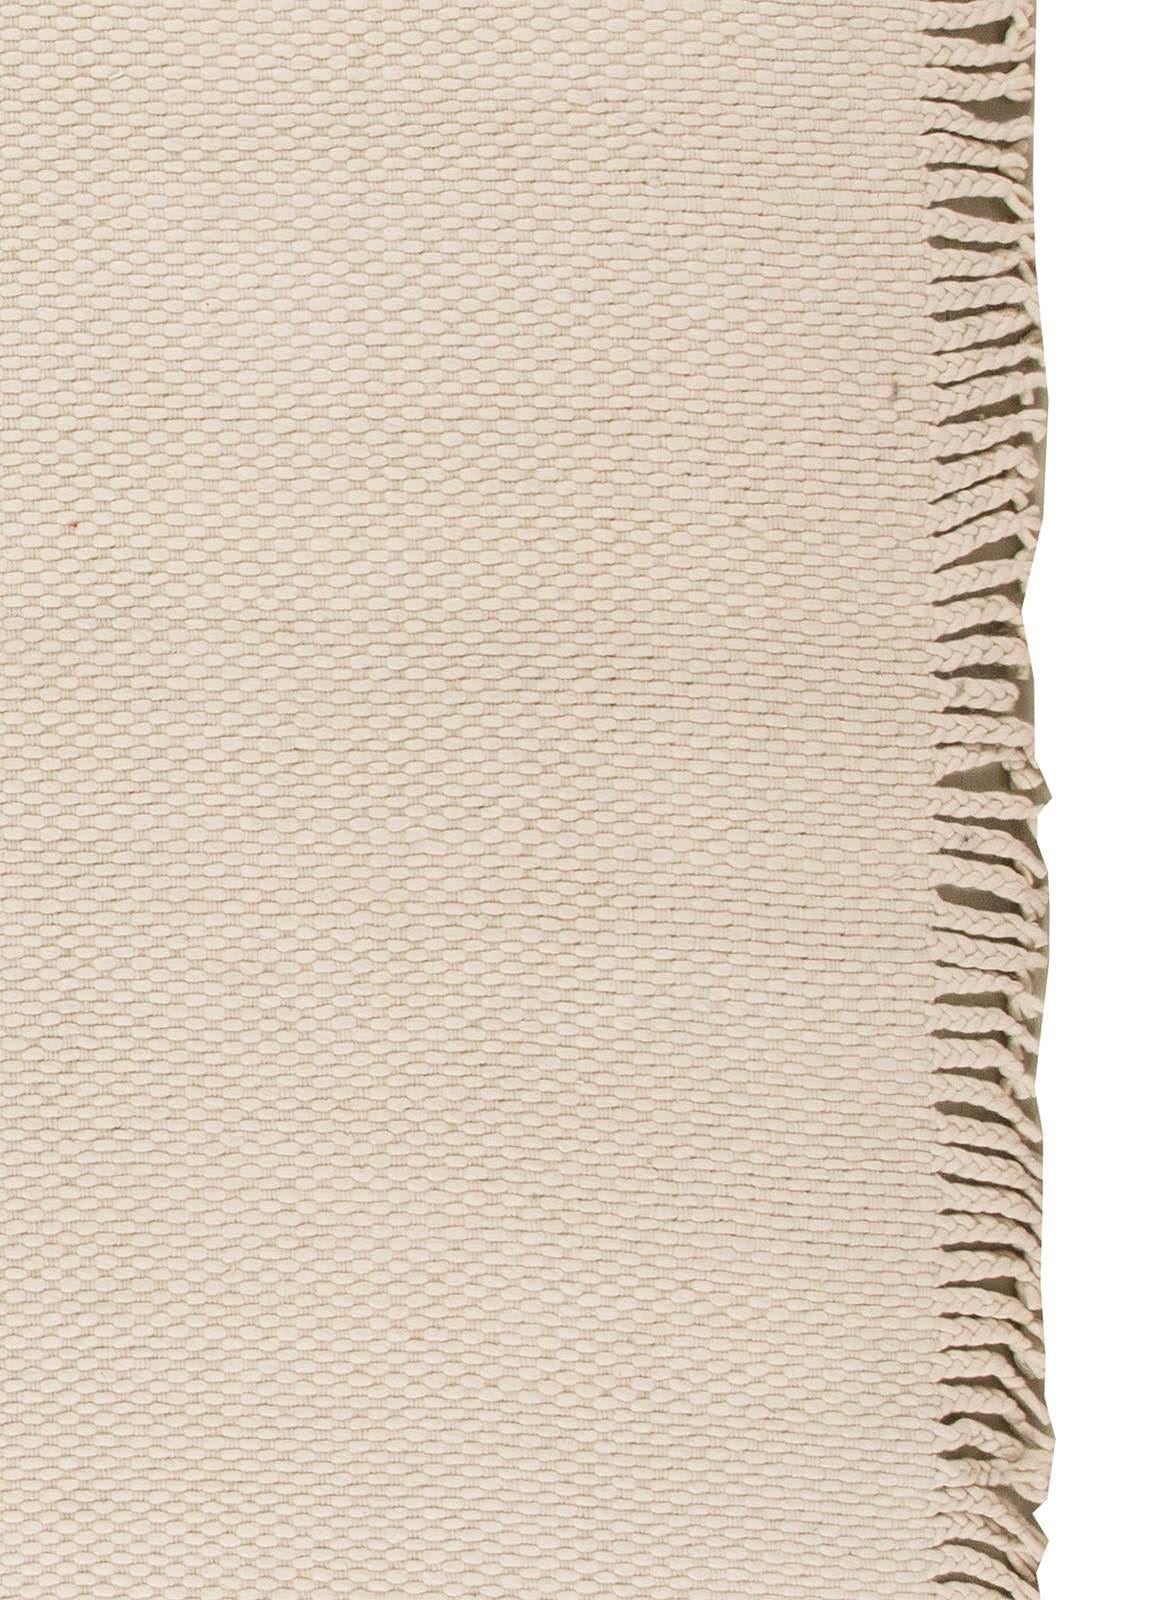 Modern Solid Beige Flat-Weave Wool Rug by Doris Leslie Blau For Sale 1